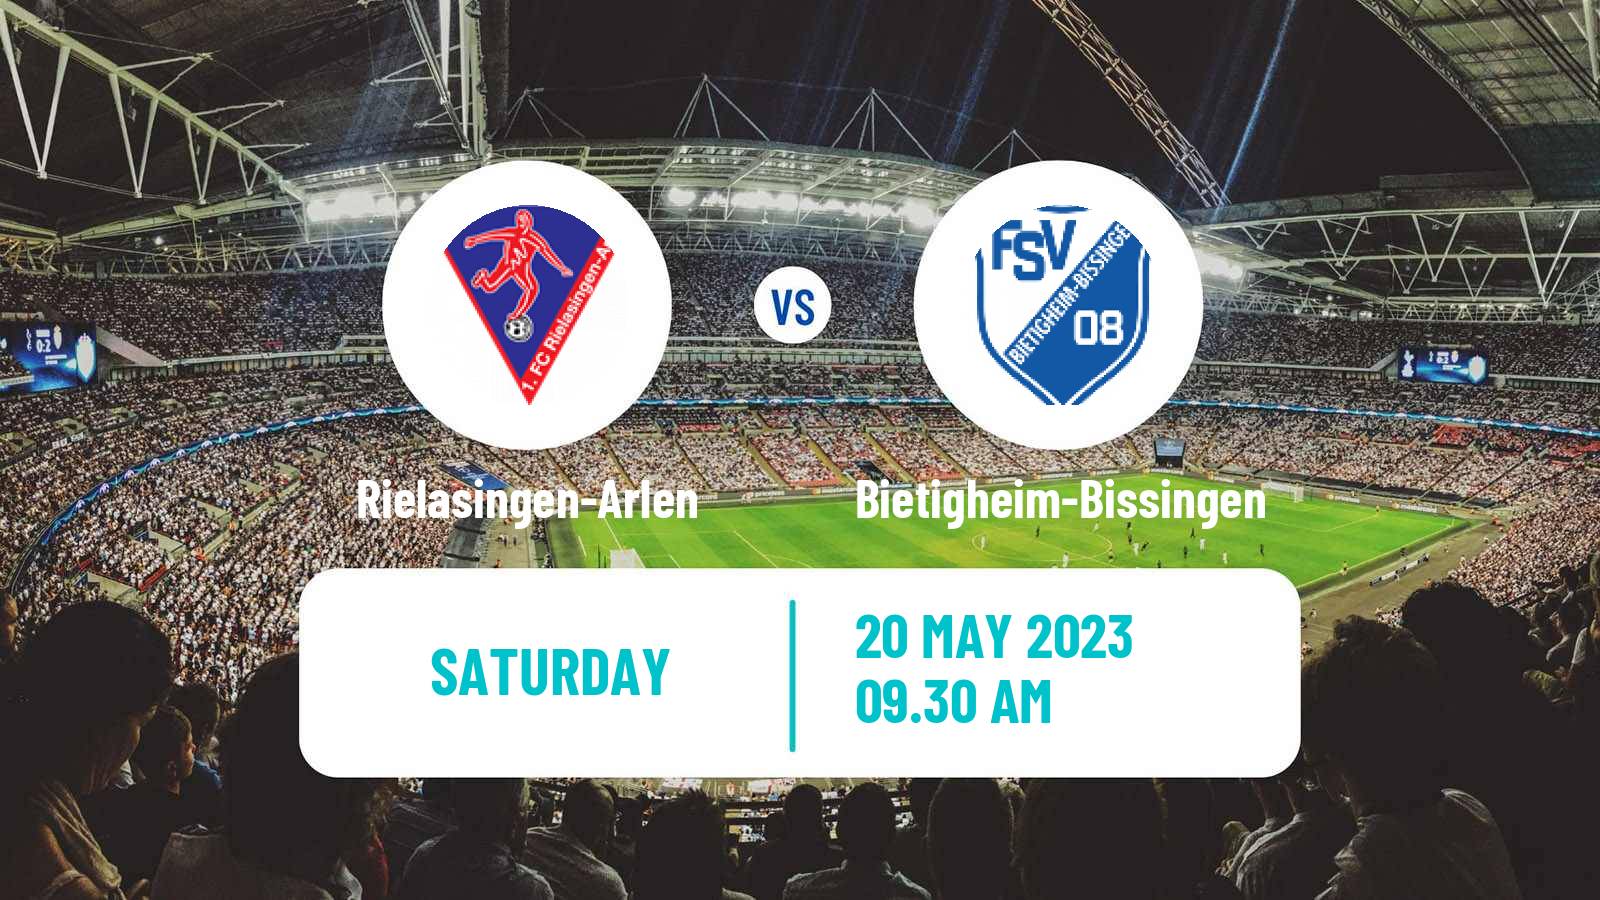 Soccer German Oberliga Baden-Württemberg Rielasingen-Arlen - Bietigheim-Bissingen